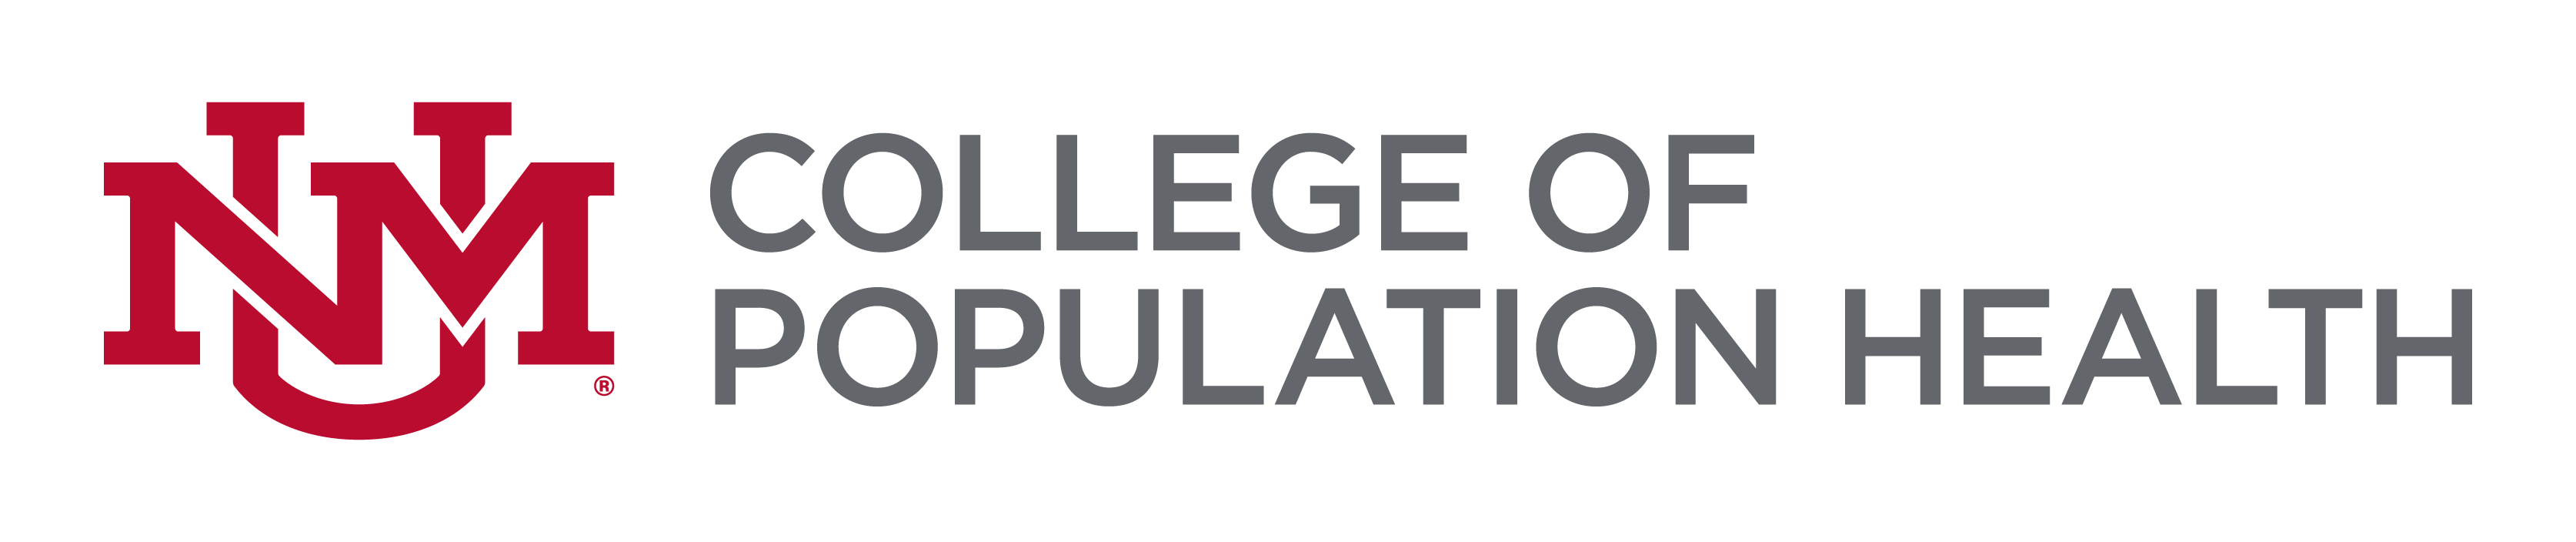 הלוגו של מכללת UNM לבריאות האוכלוסין